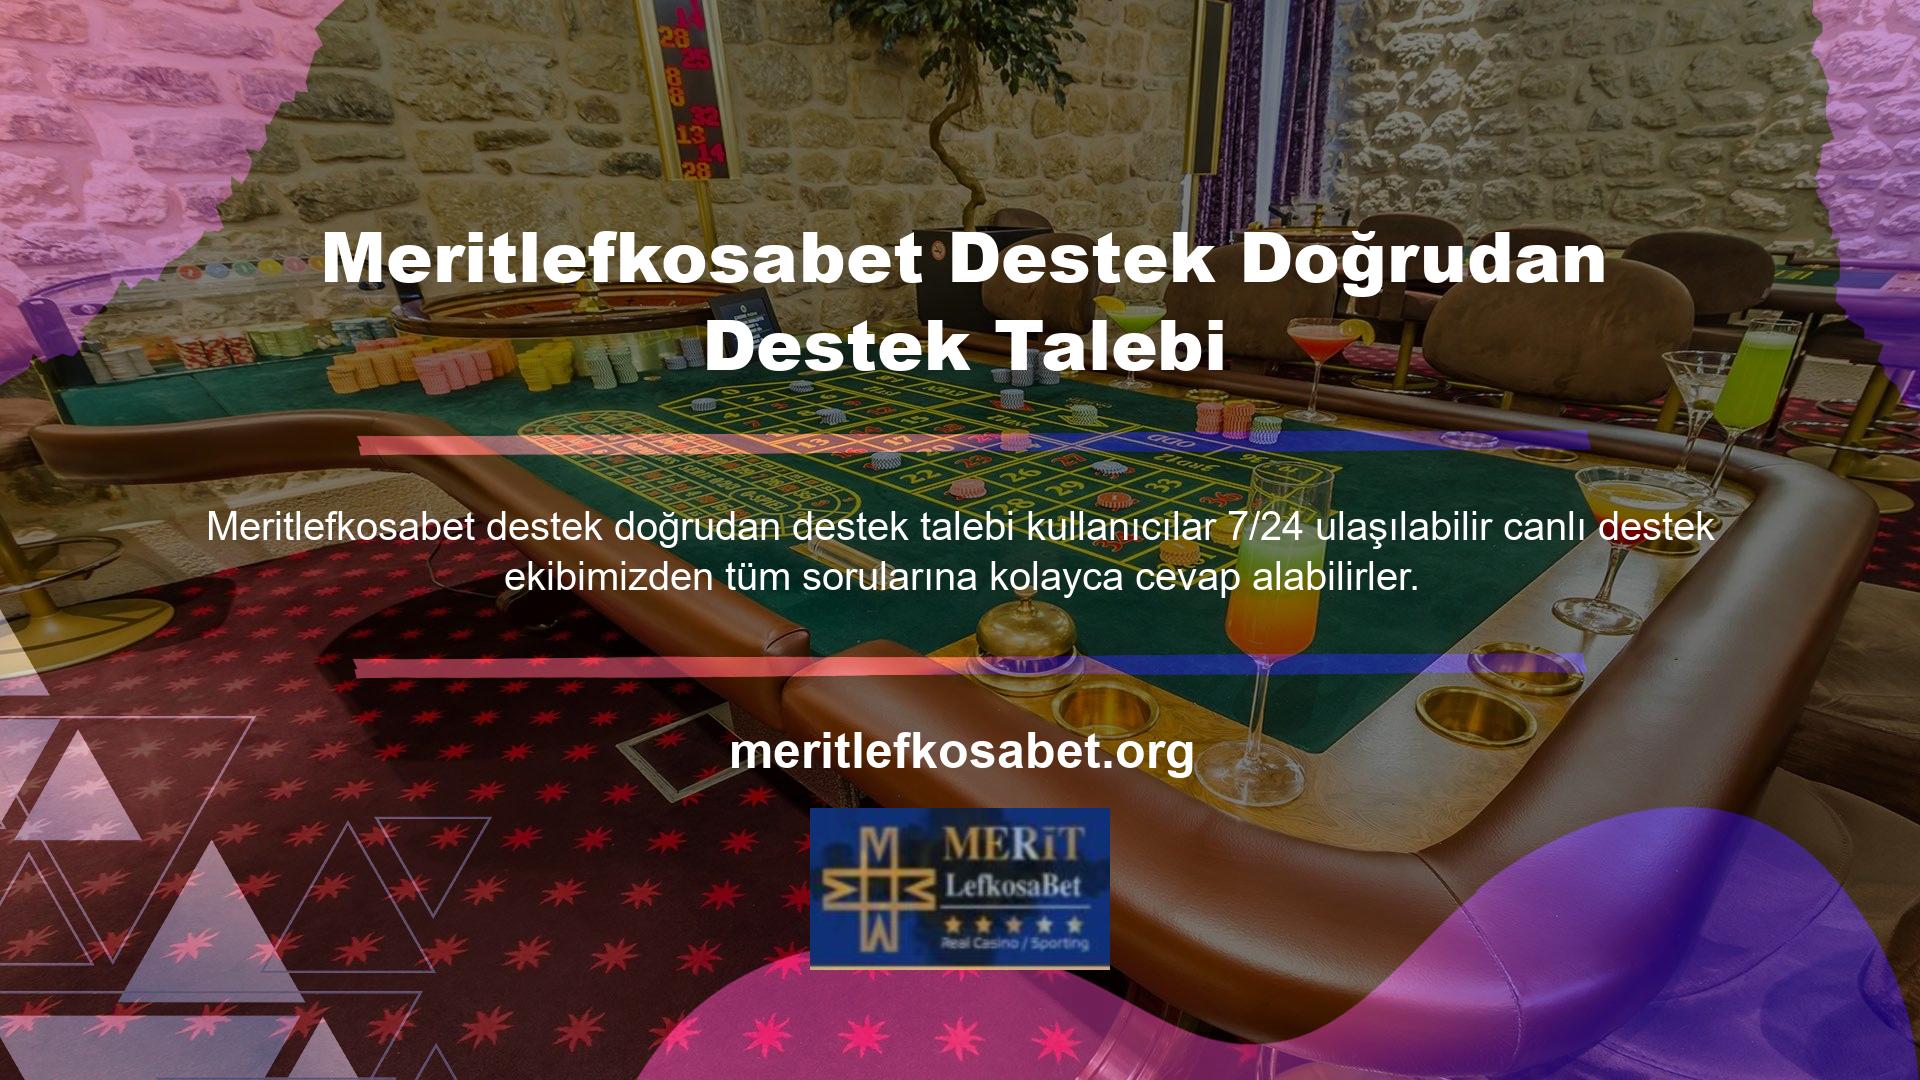 Canlı destek ekibimiz, Meritlefkosabet Destek' ten doğrudan bilgi veya belge talep etmeden sizin için çalışan uzmanlardan oluşmaktadır